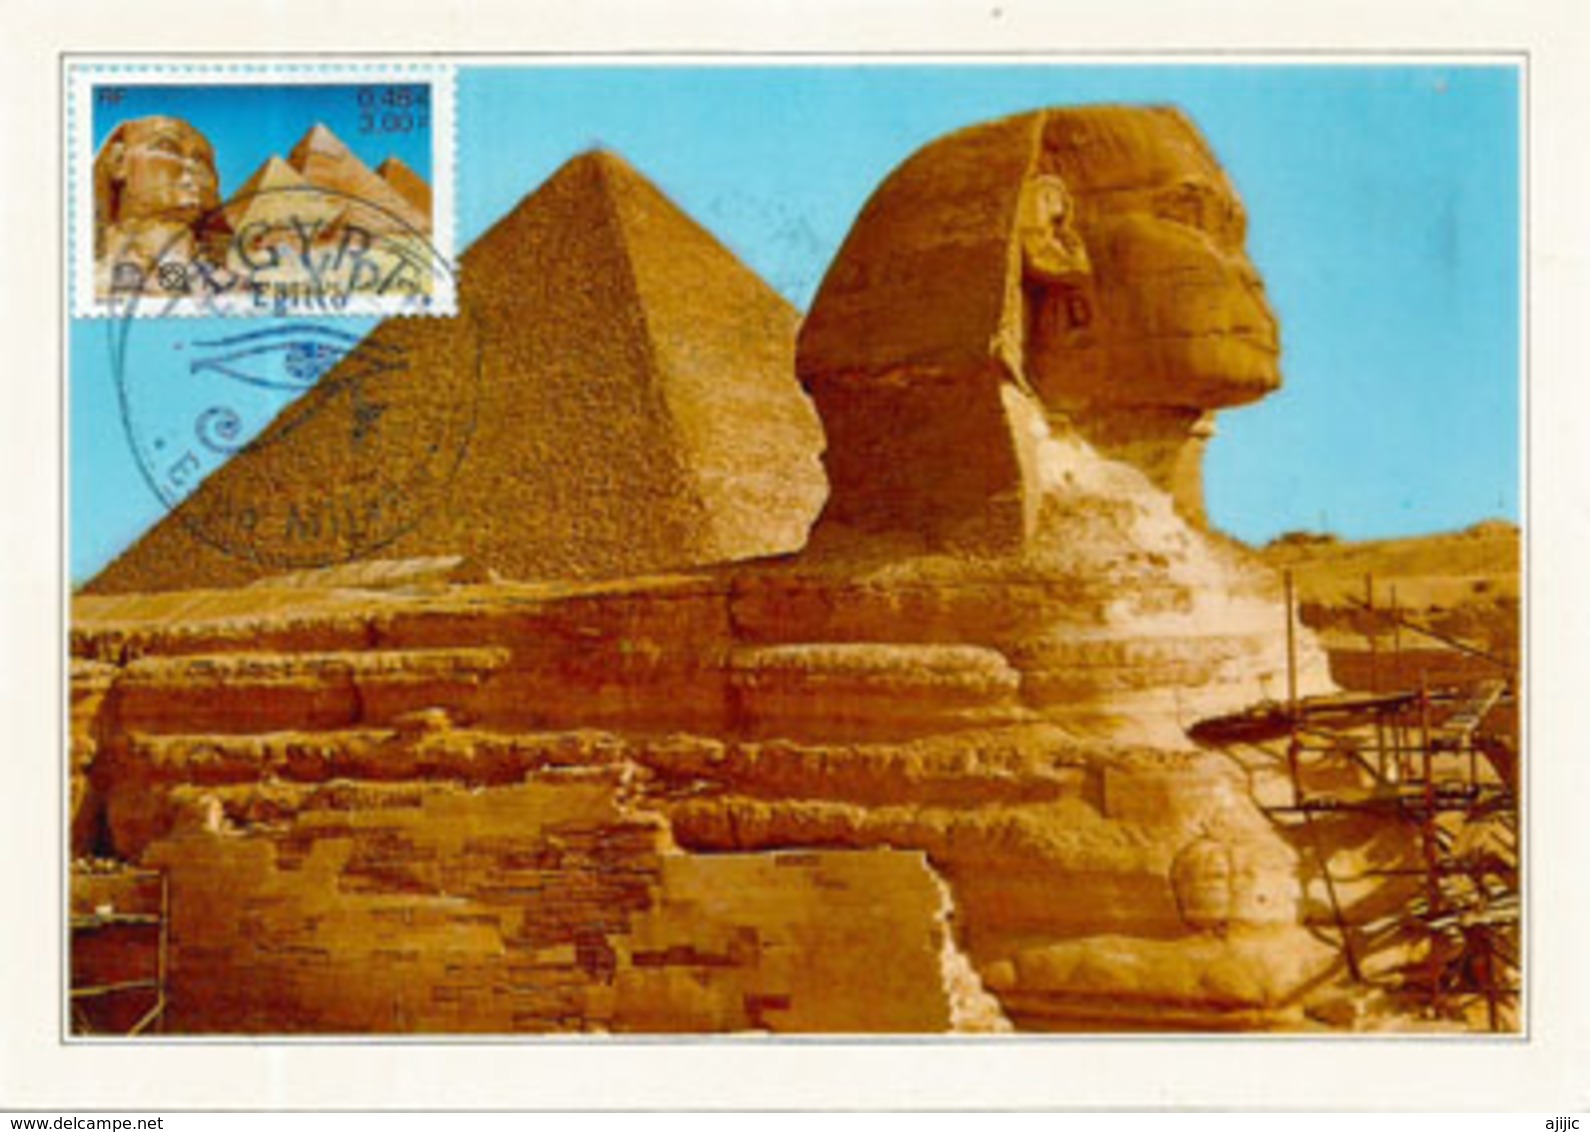 Sphinx De Gizeh & Pyramide De Khéops, Carte-maximum Souvenir Du Pavillon EGYPTE De L'EXPO UNIVERSELLE MILAN 2015 (RARE) - Archaeology